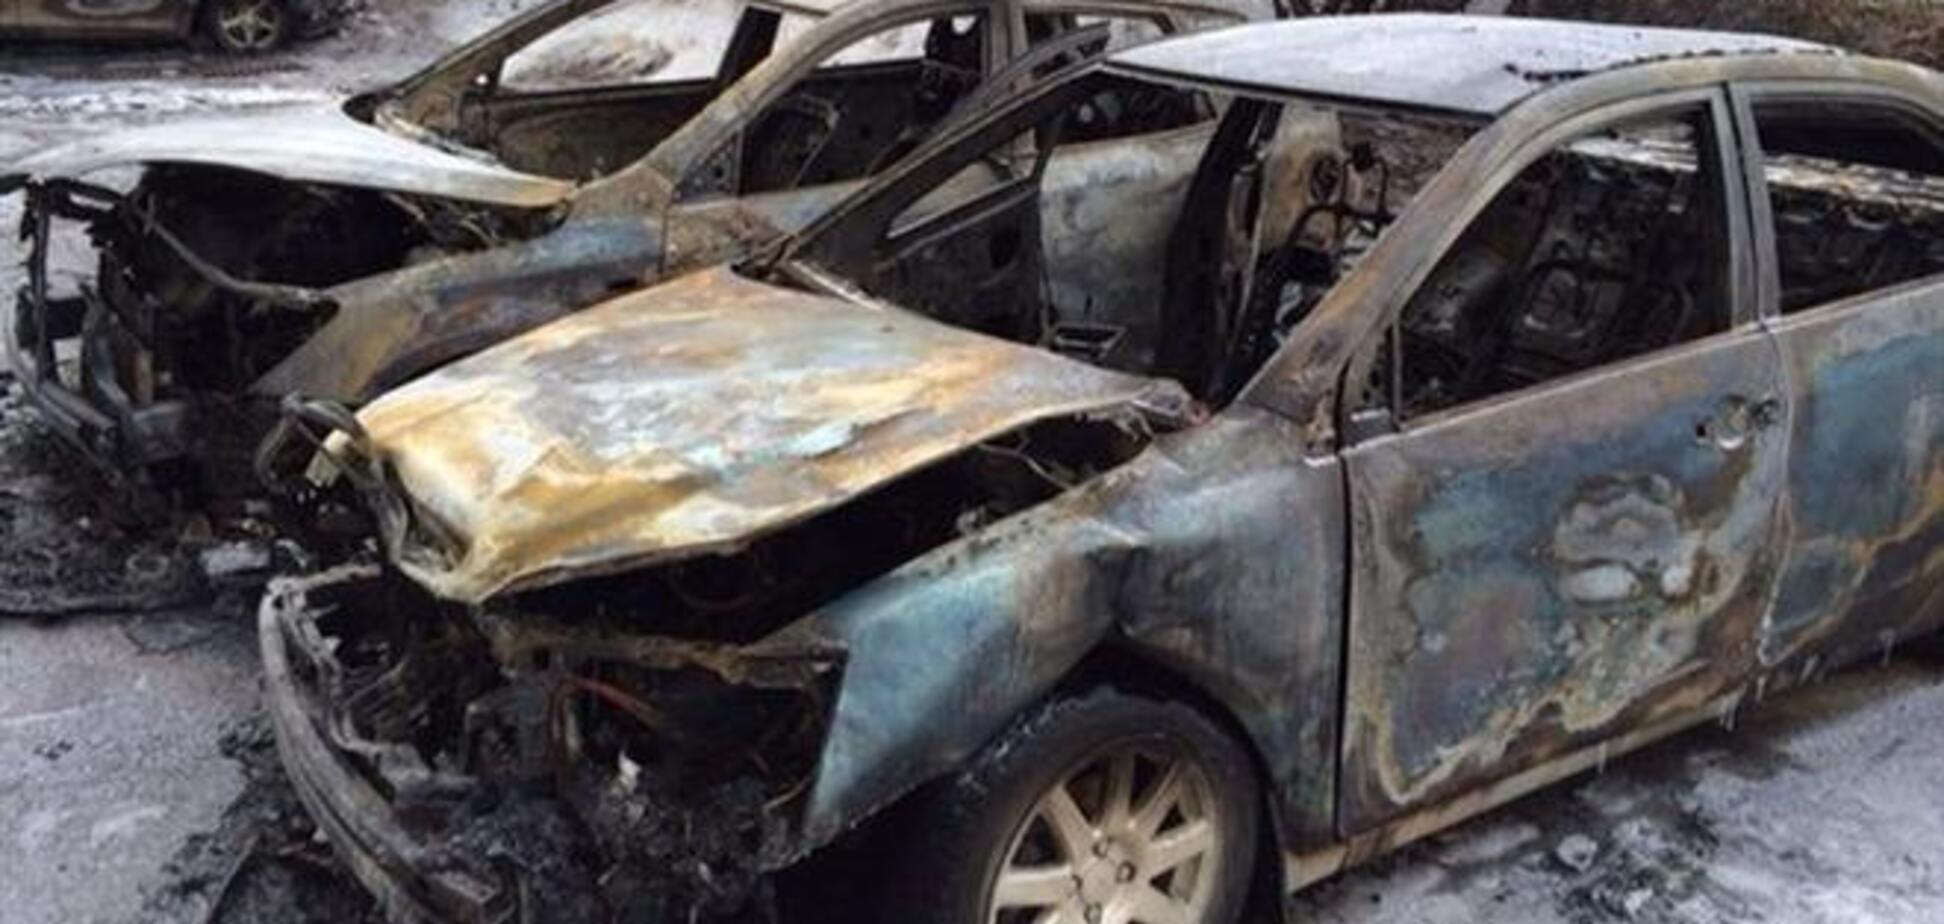 У Дніпропетровську вночі спалили три автомобілі